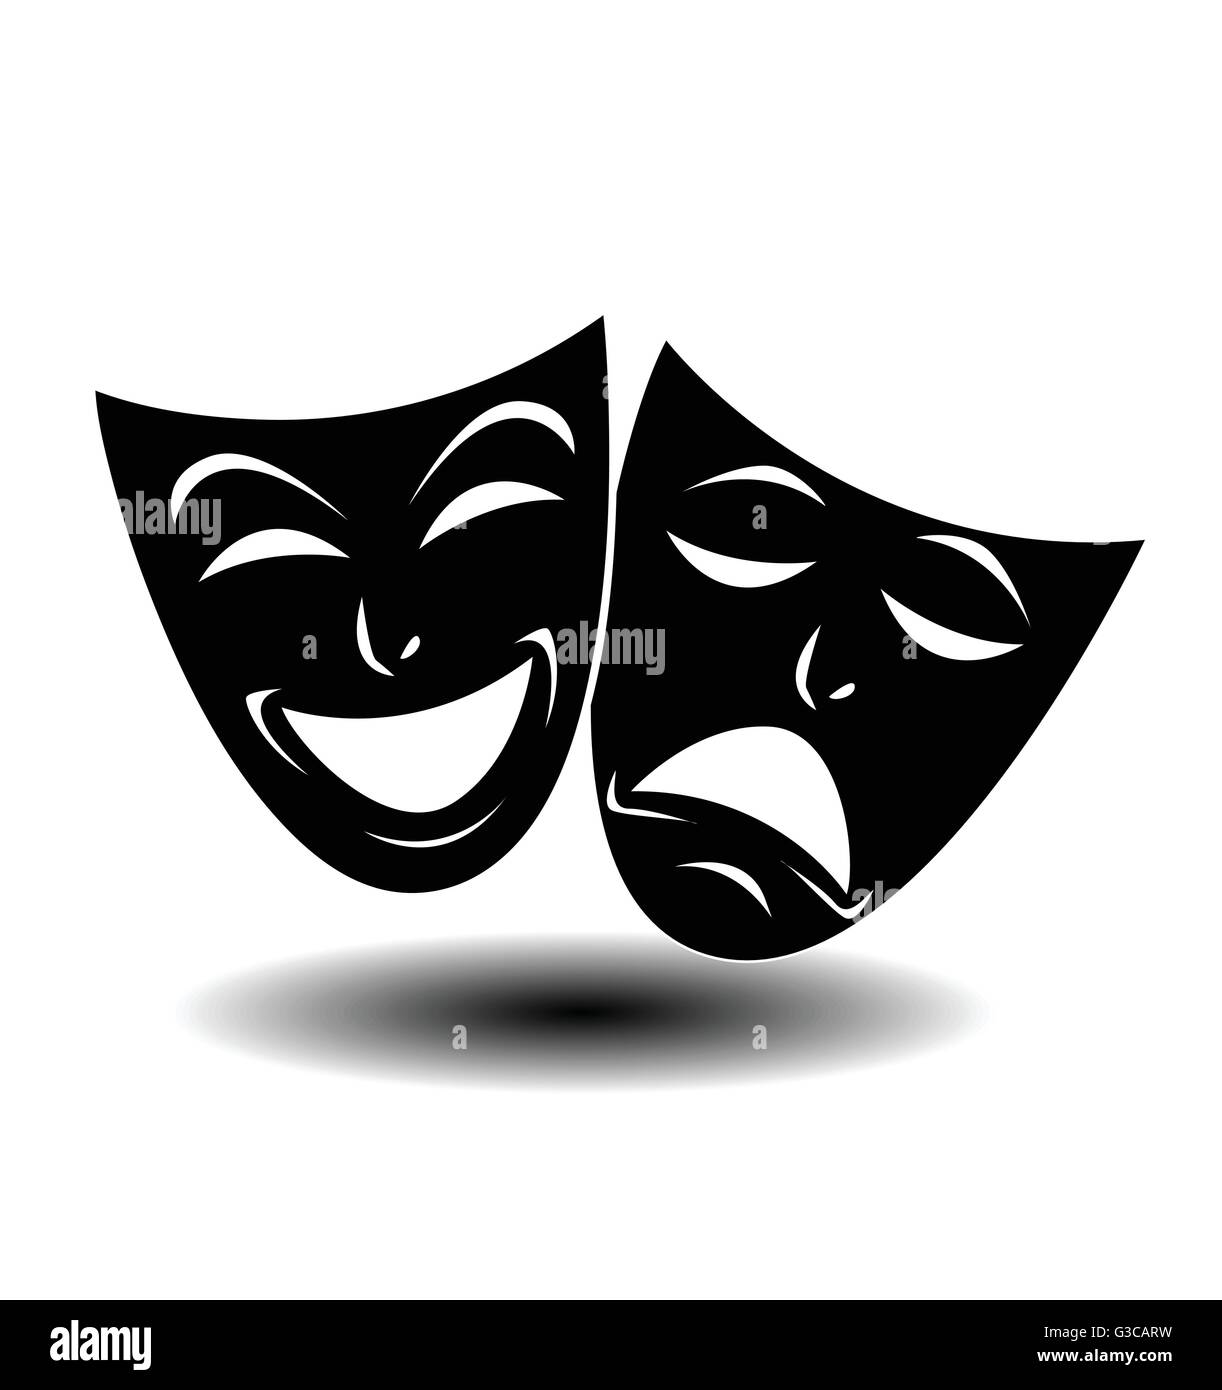 Theater-Ikone mit fröhlichen und traurigen Masken. Vektor-Illustration  Stock-Vektorgrafik - Alamy